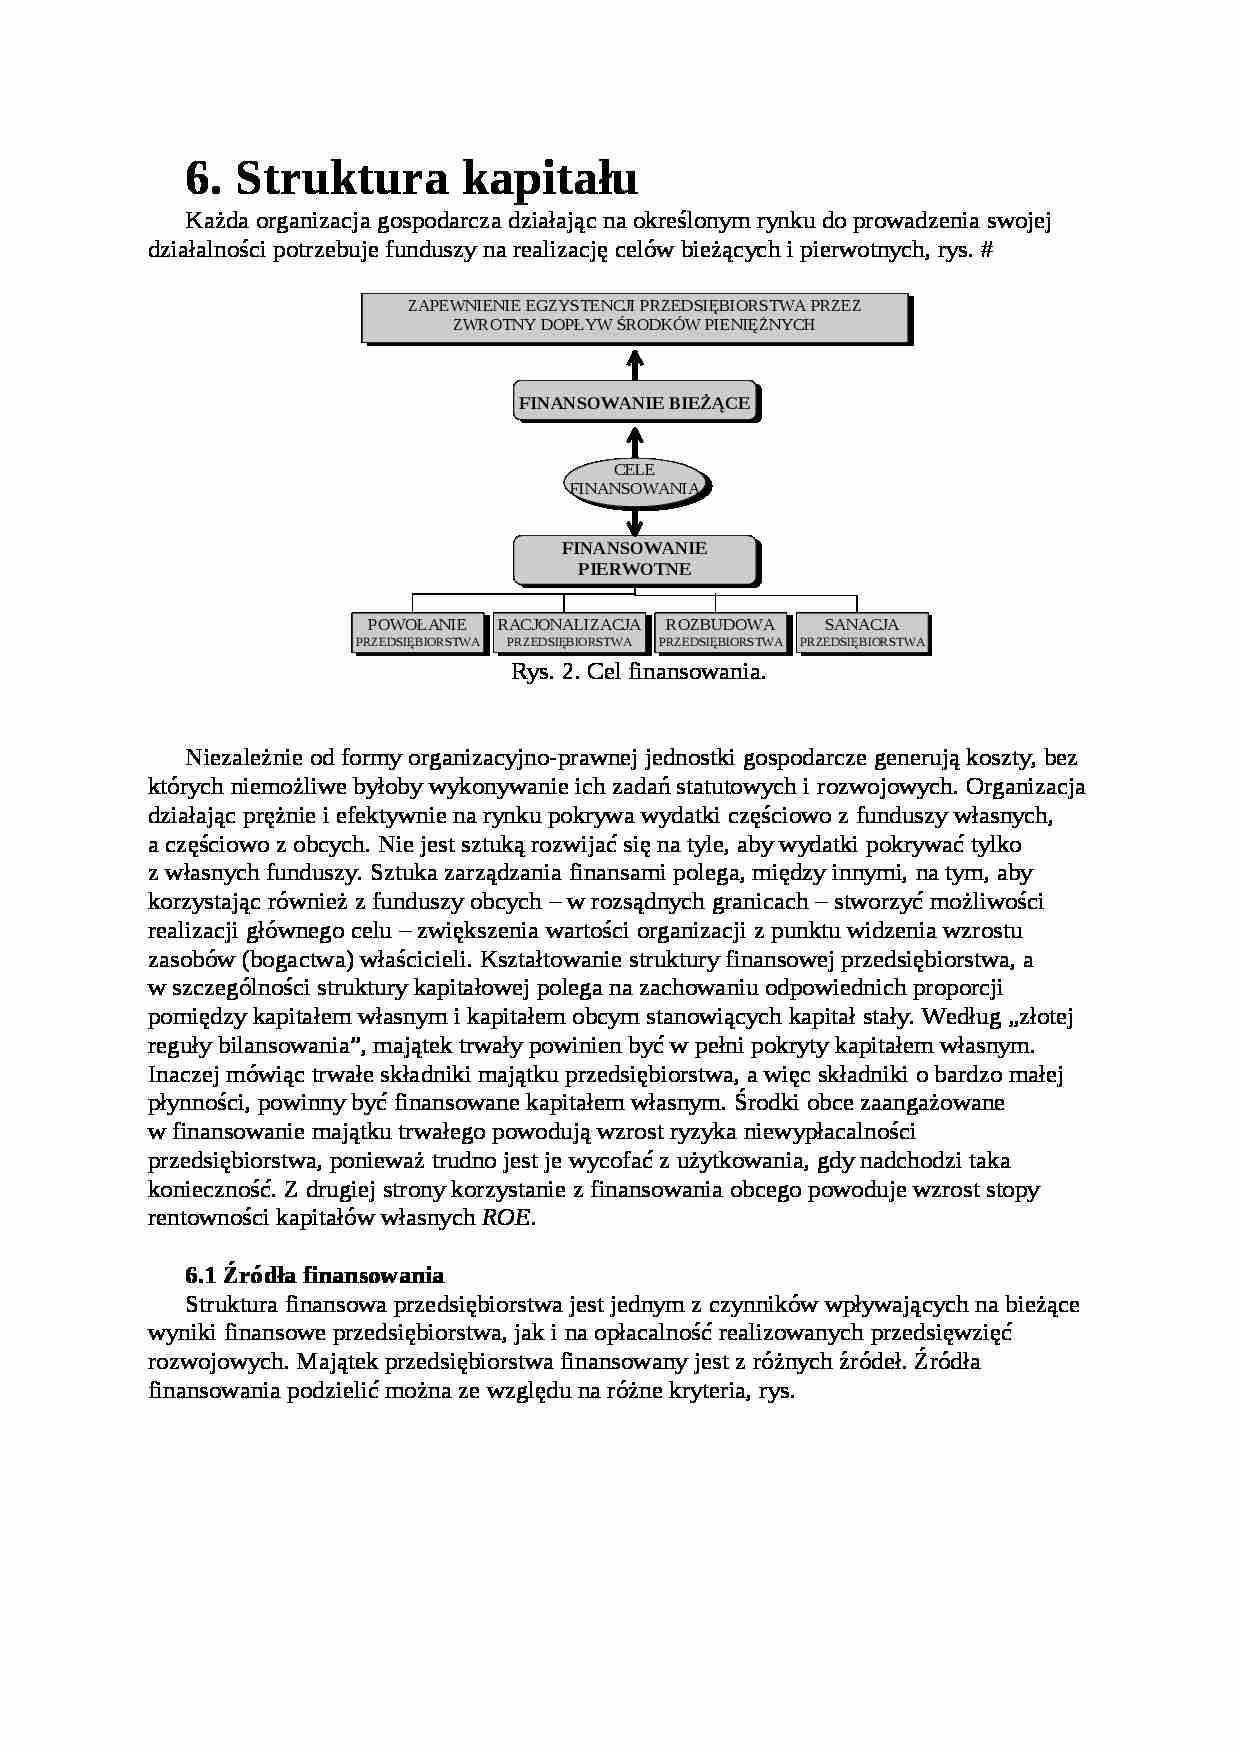 Zarządzanie finansami - struktura kapitałowa - strona 1